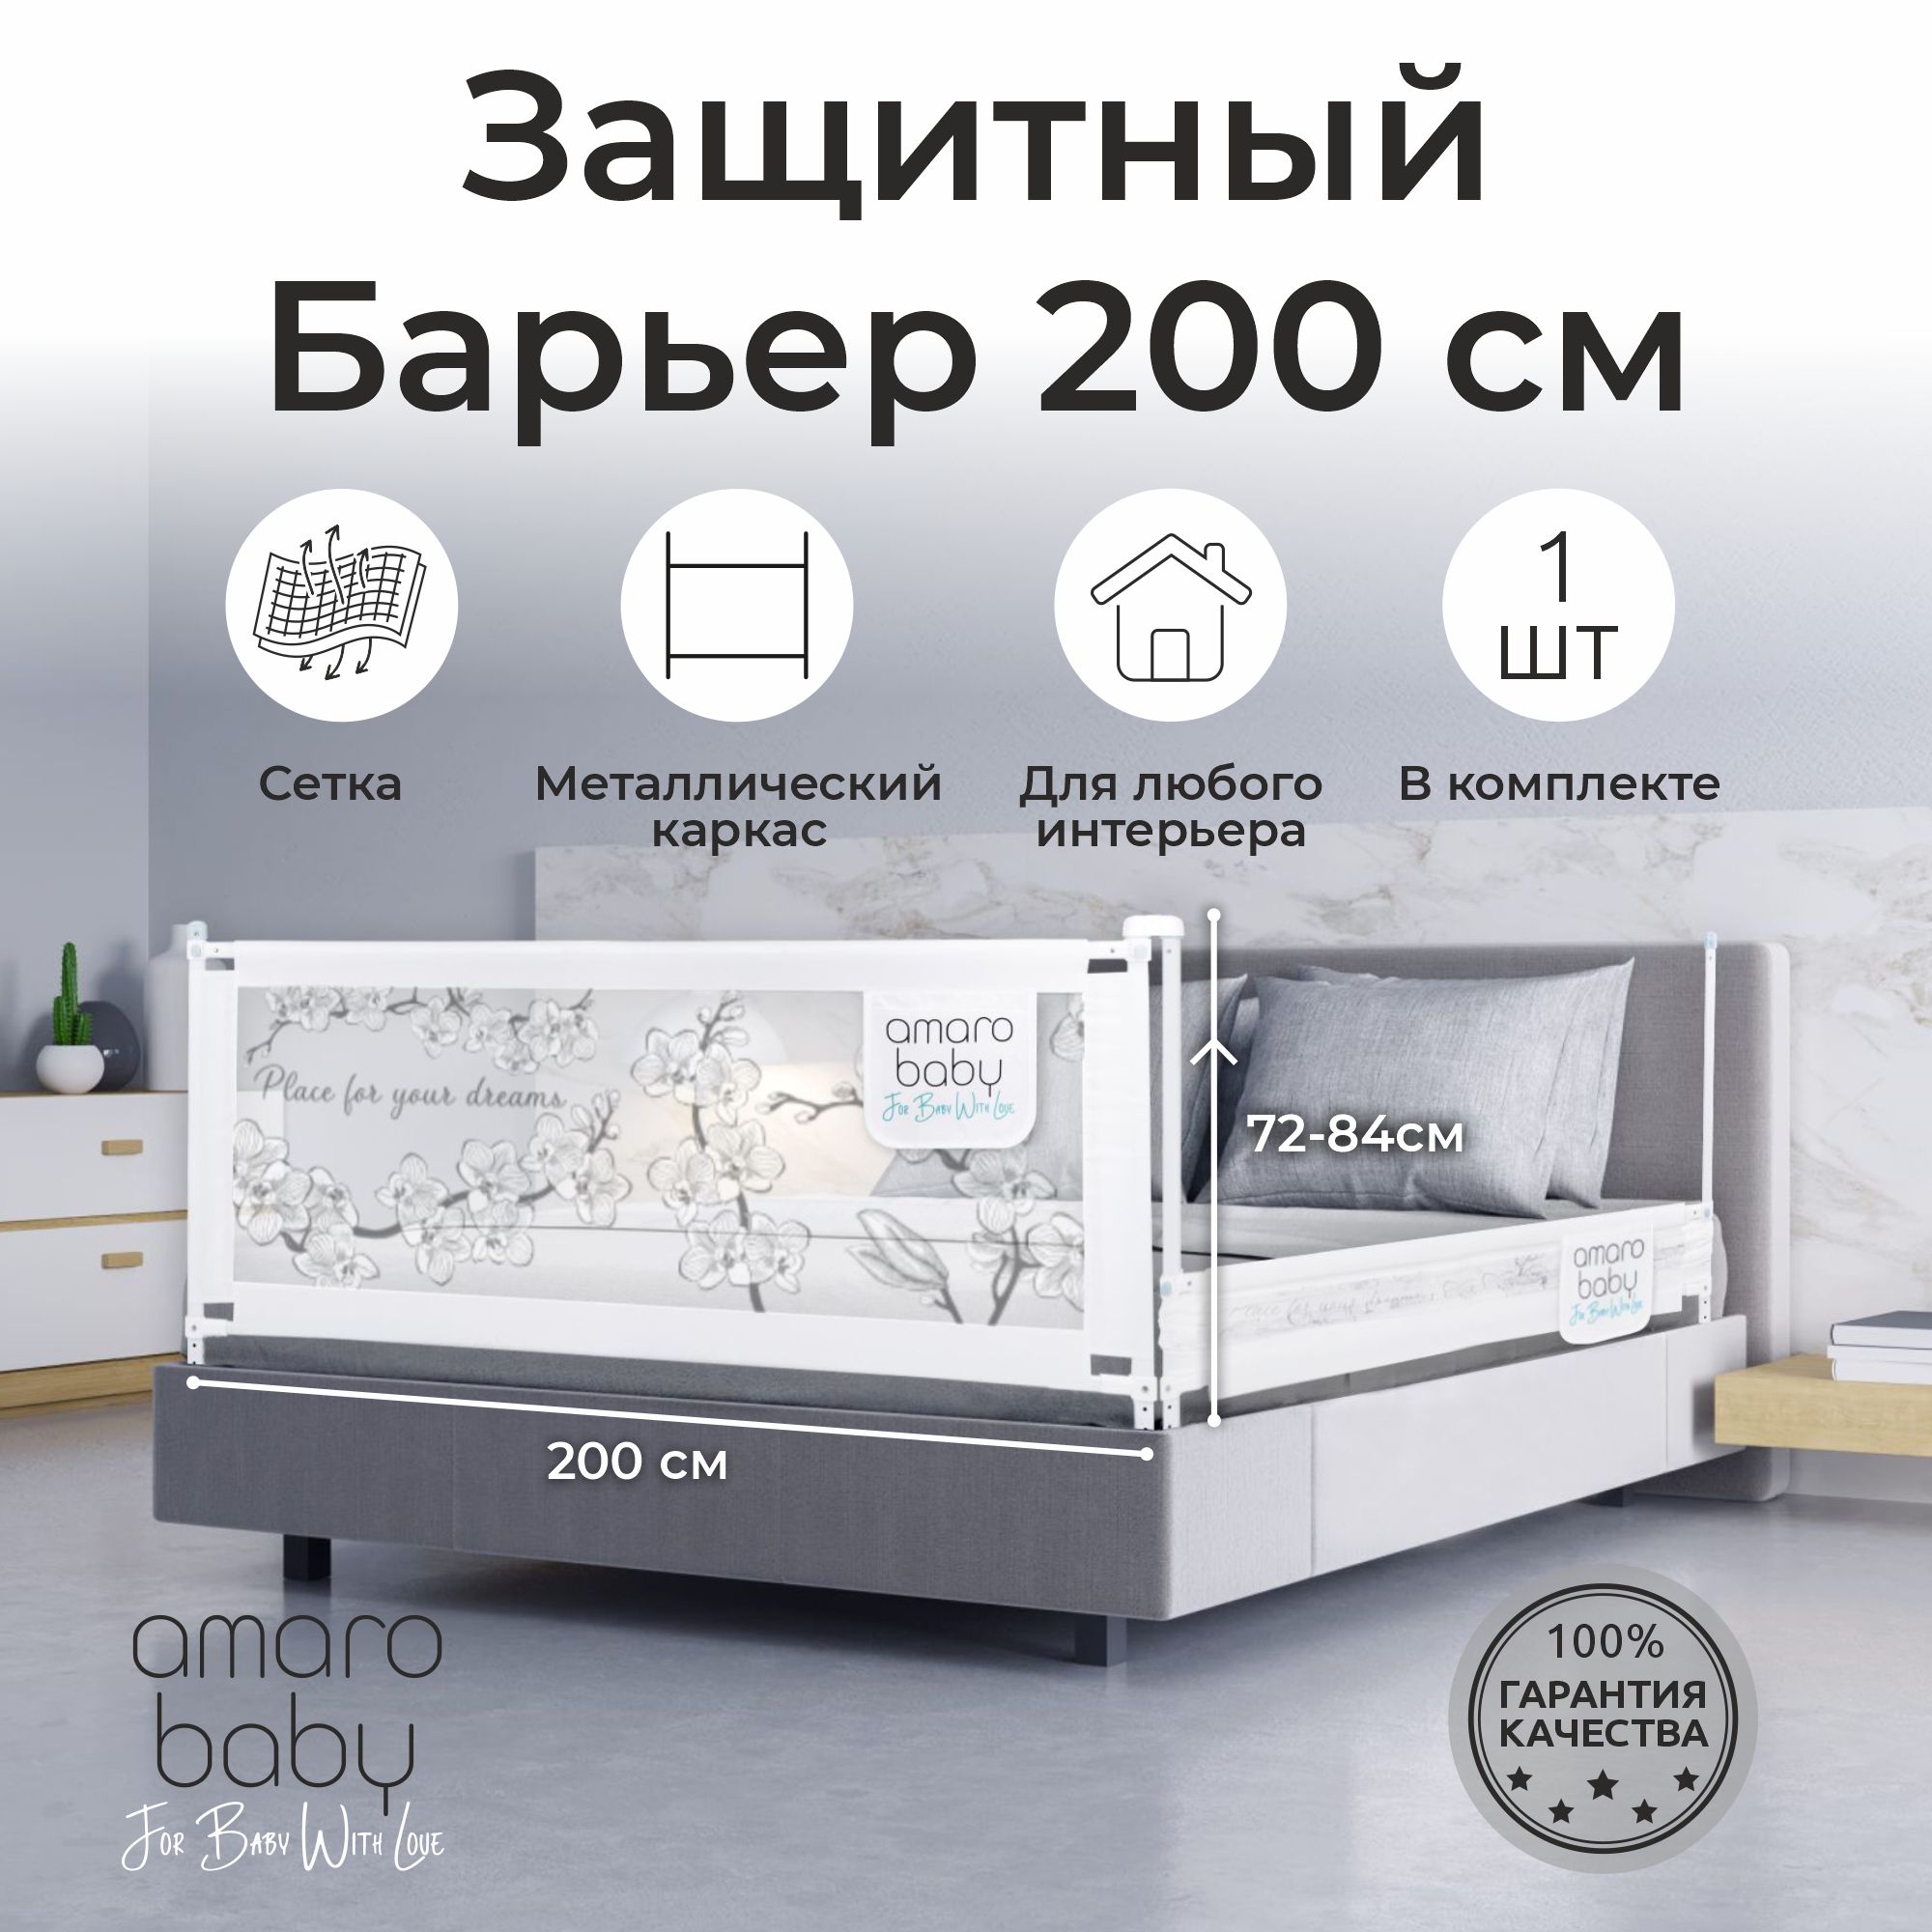 Барьер защитный для кровати AMAROBABY safety of dreams, 200 см, ограничитель-безопасности